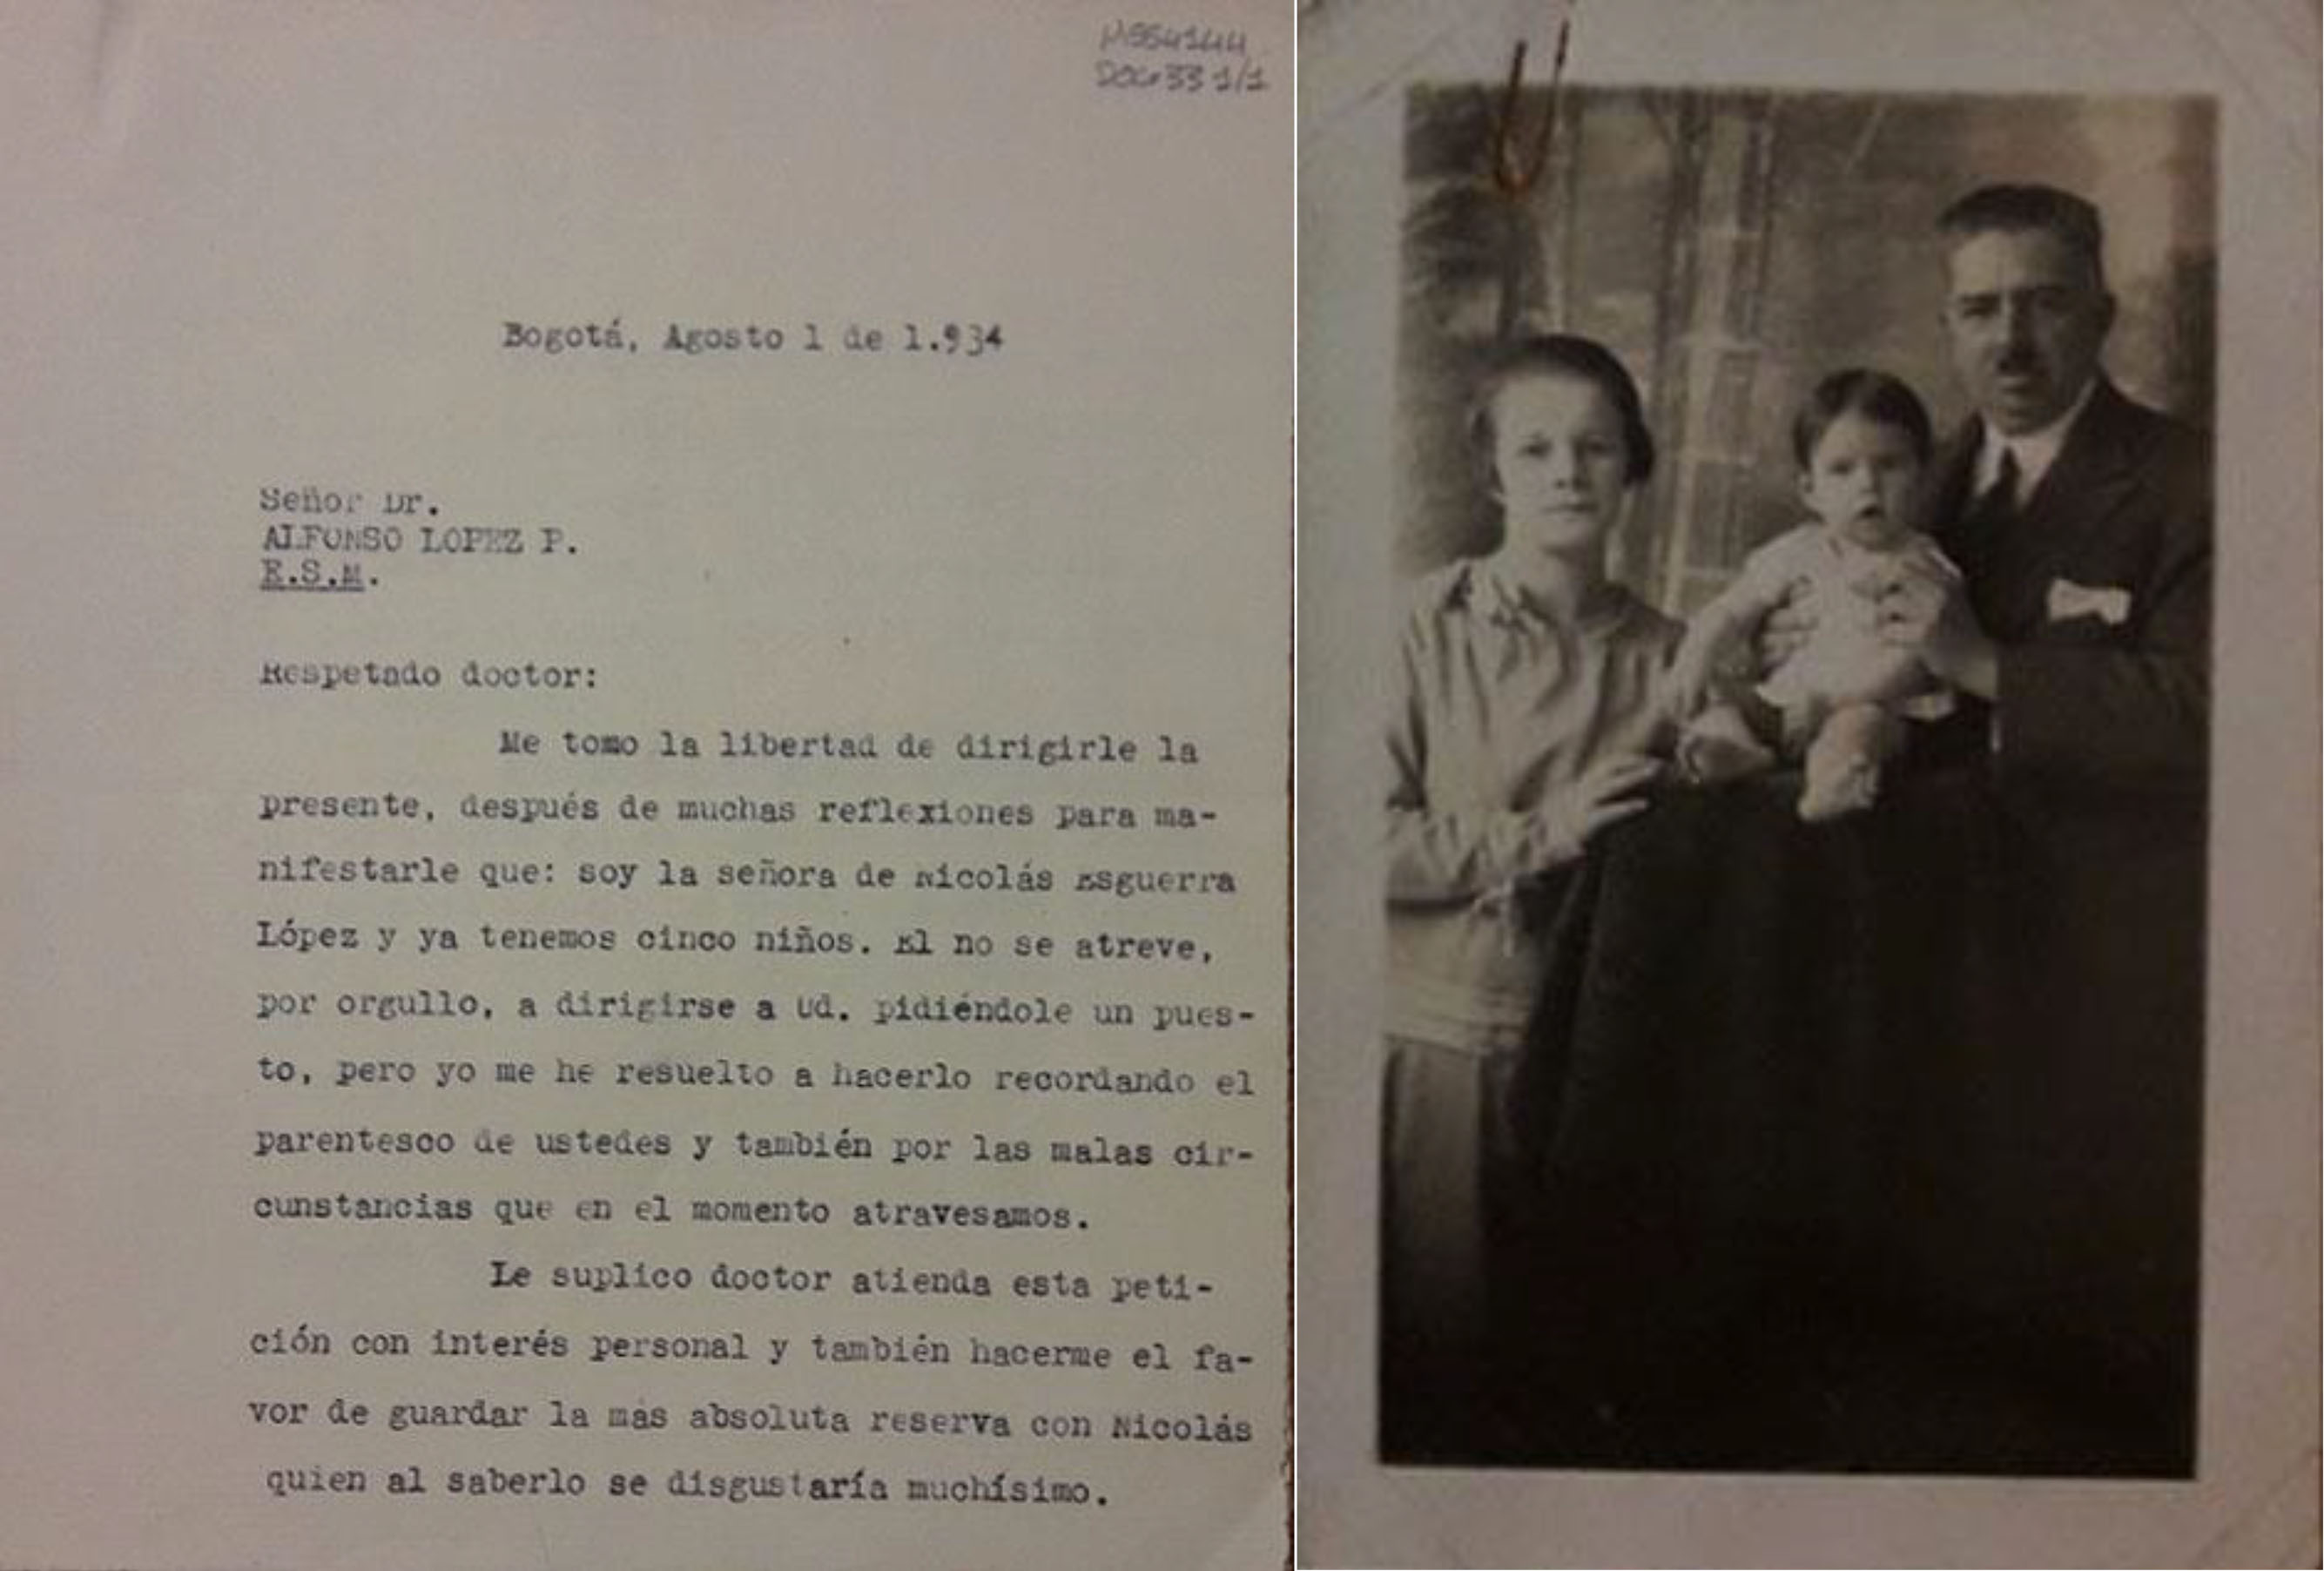 Carta de Carmen Gómez a Alfonso López Pumarejo, en la que solicita trabajo a su esposo y adjunta una fotografía de la familia. Bogotá, 1 de agosto de 1934. MSS4144, doc. 33. Imagen exclusiva de divulgación, prohibido su uso.